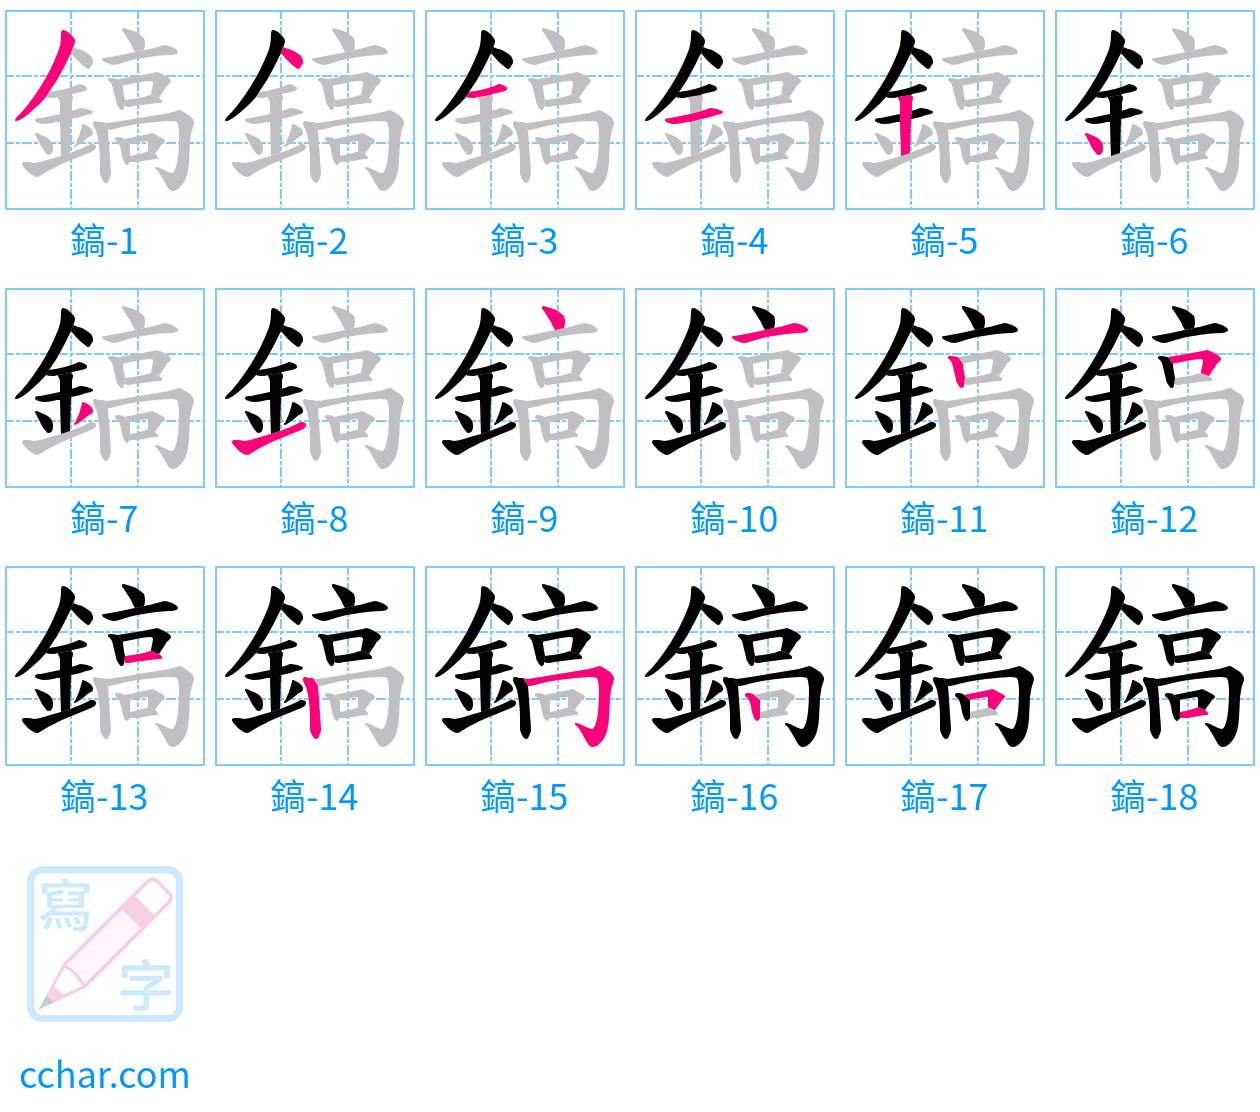 鎬 stroke order step-by-step diagram